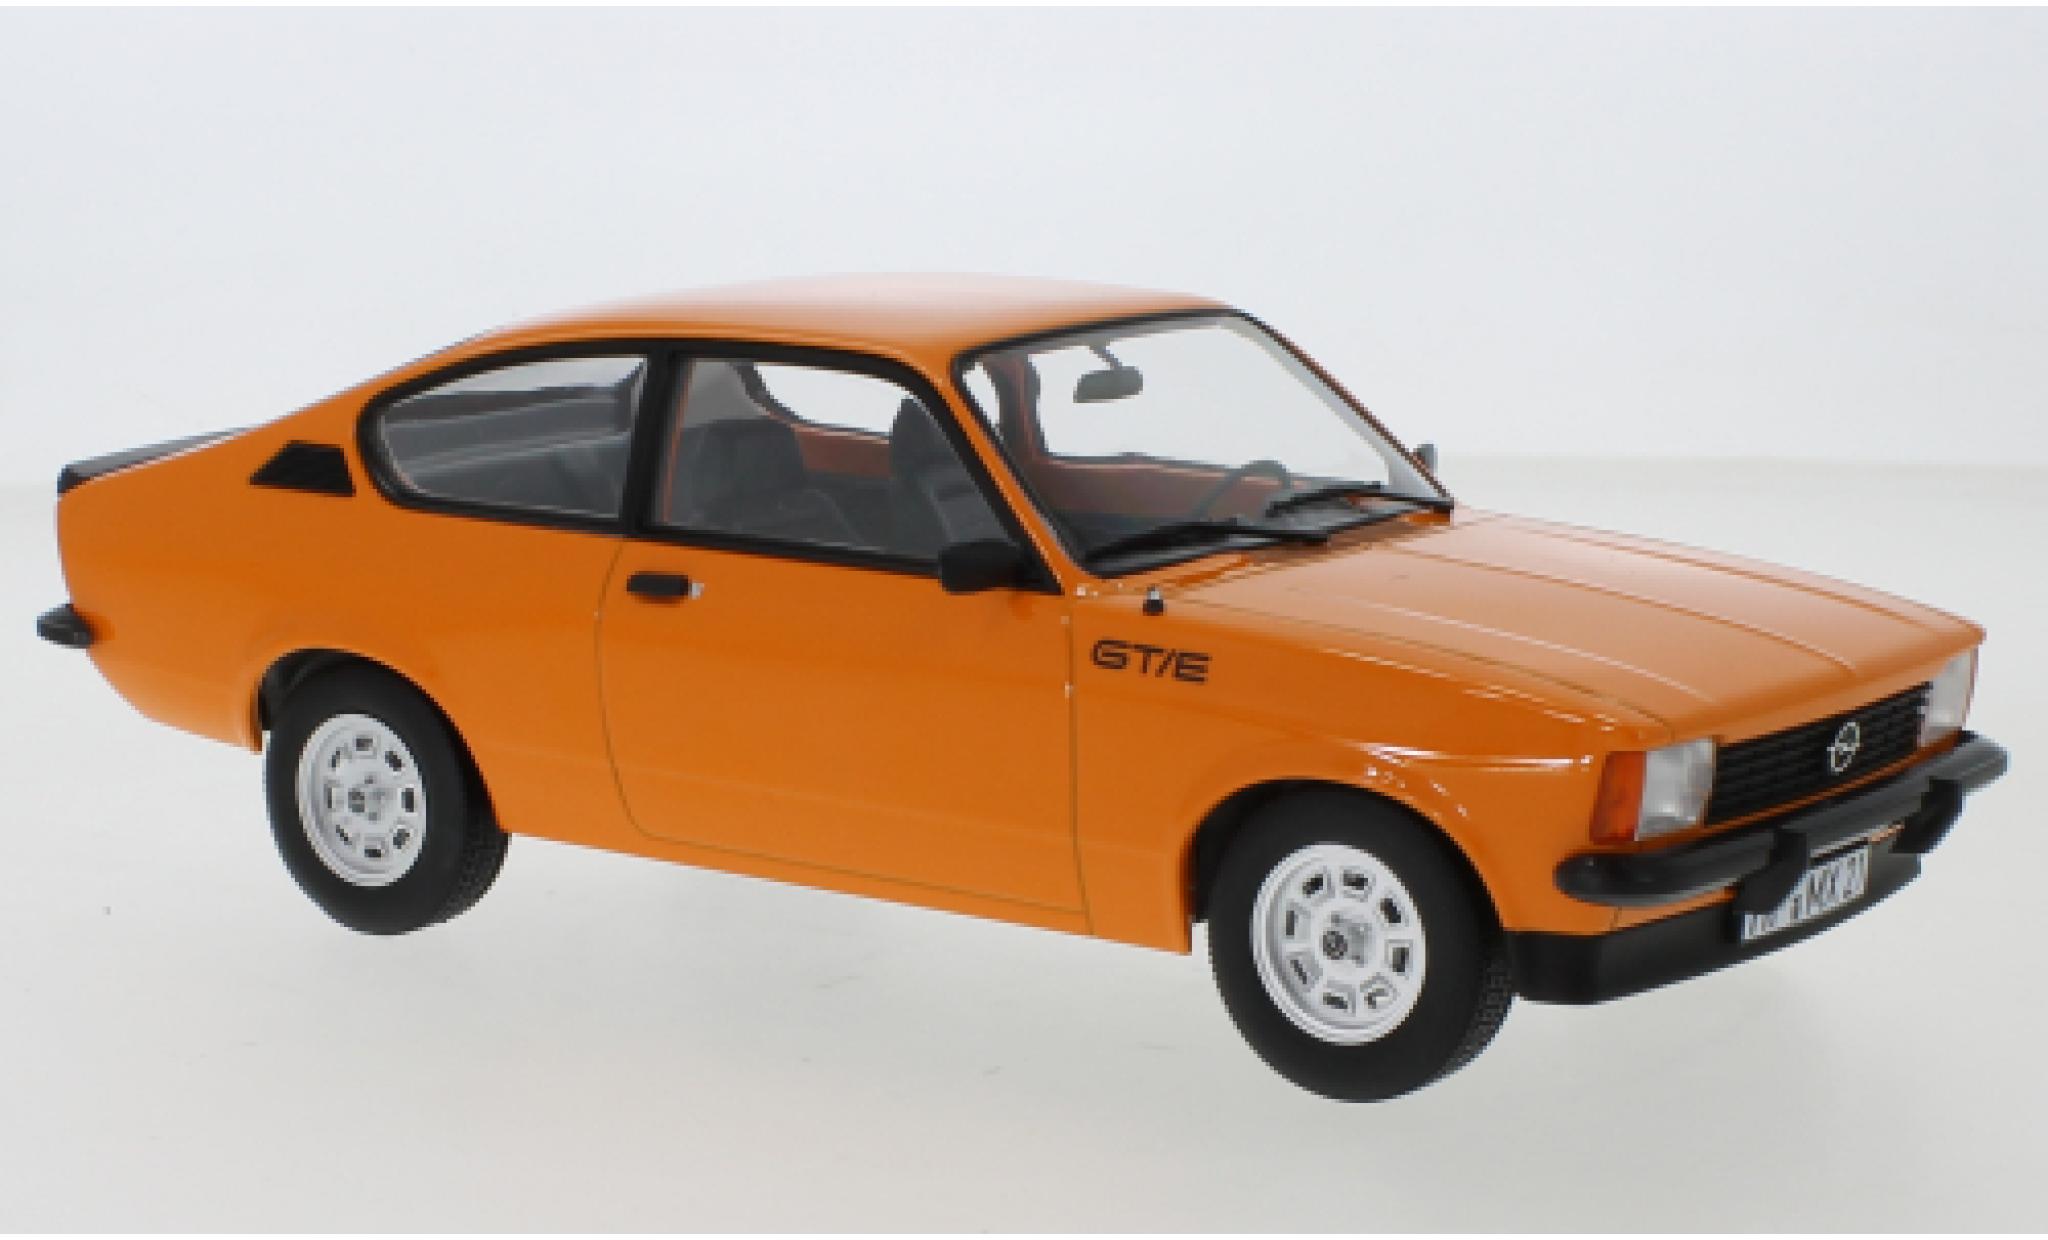 Modellino in miniatura Opel Kadett 1/18 Norev C GT/E orange 1977 - Modellini -automobile.it